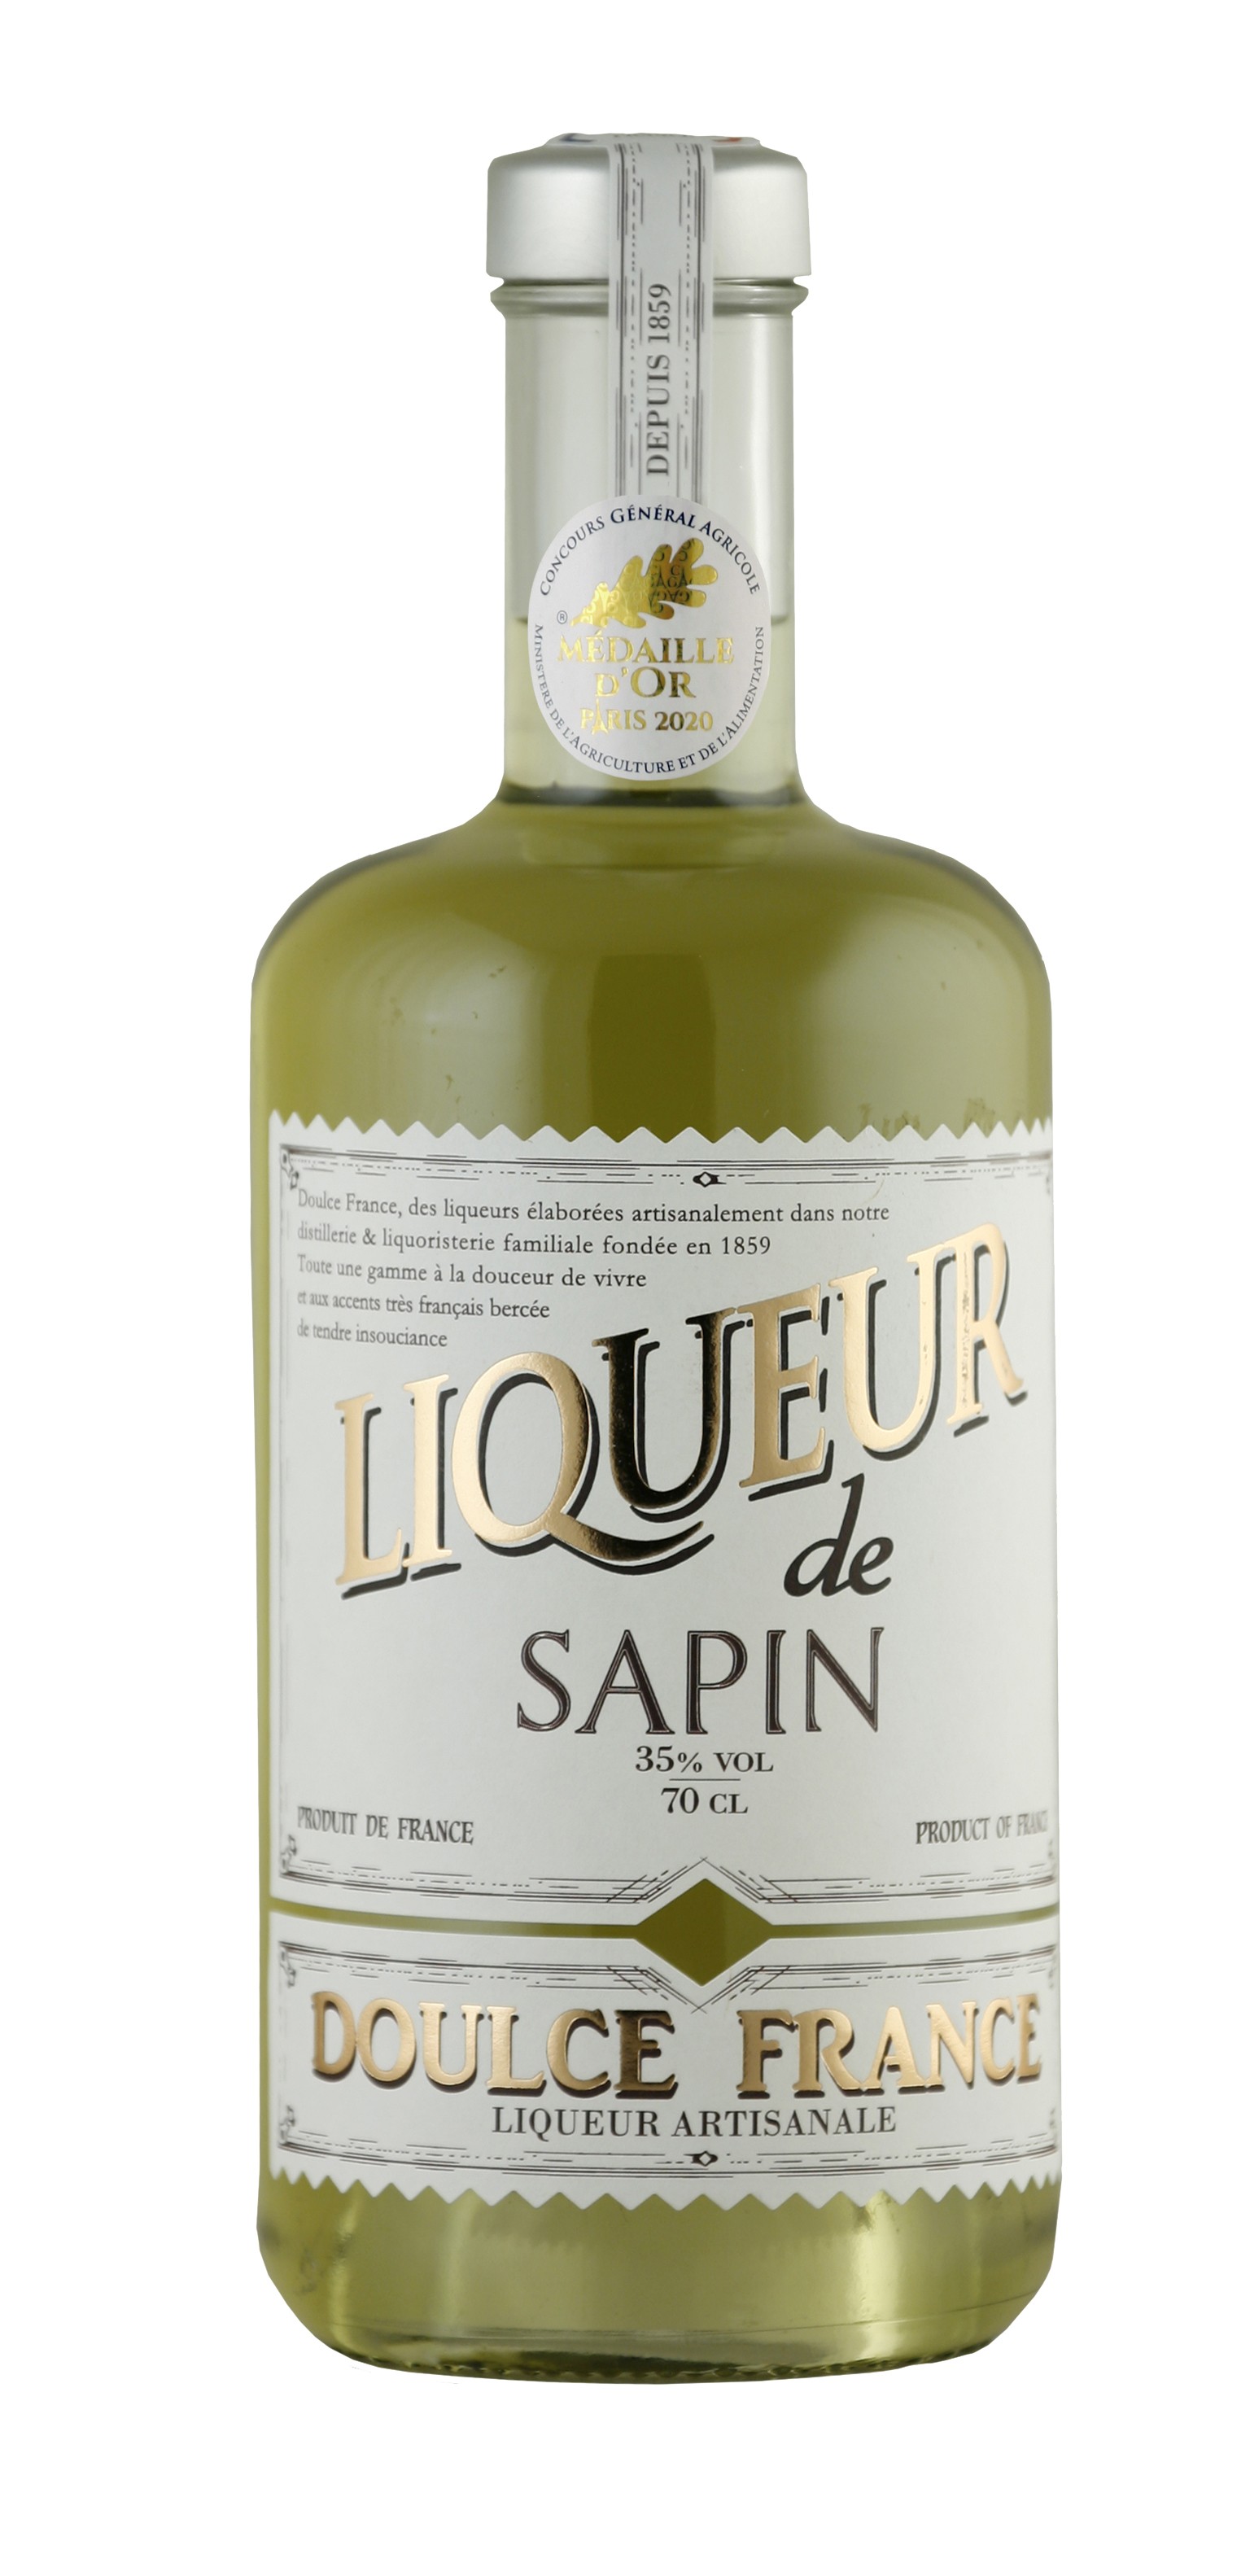 Sapin liqueur - 70 cl - 35% vol